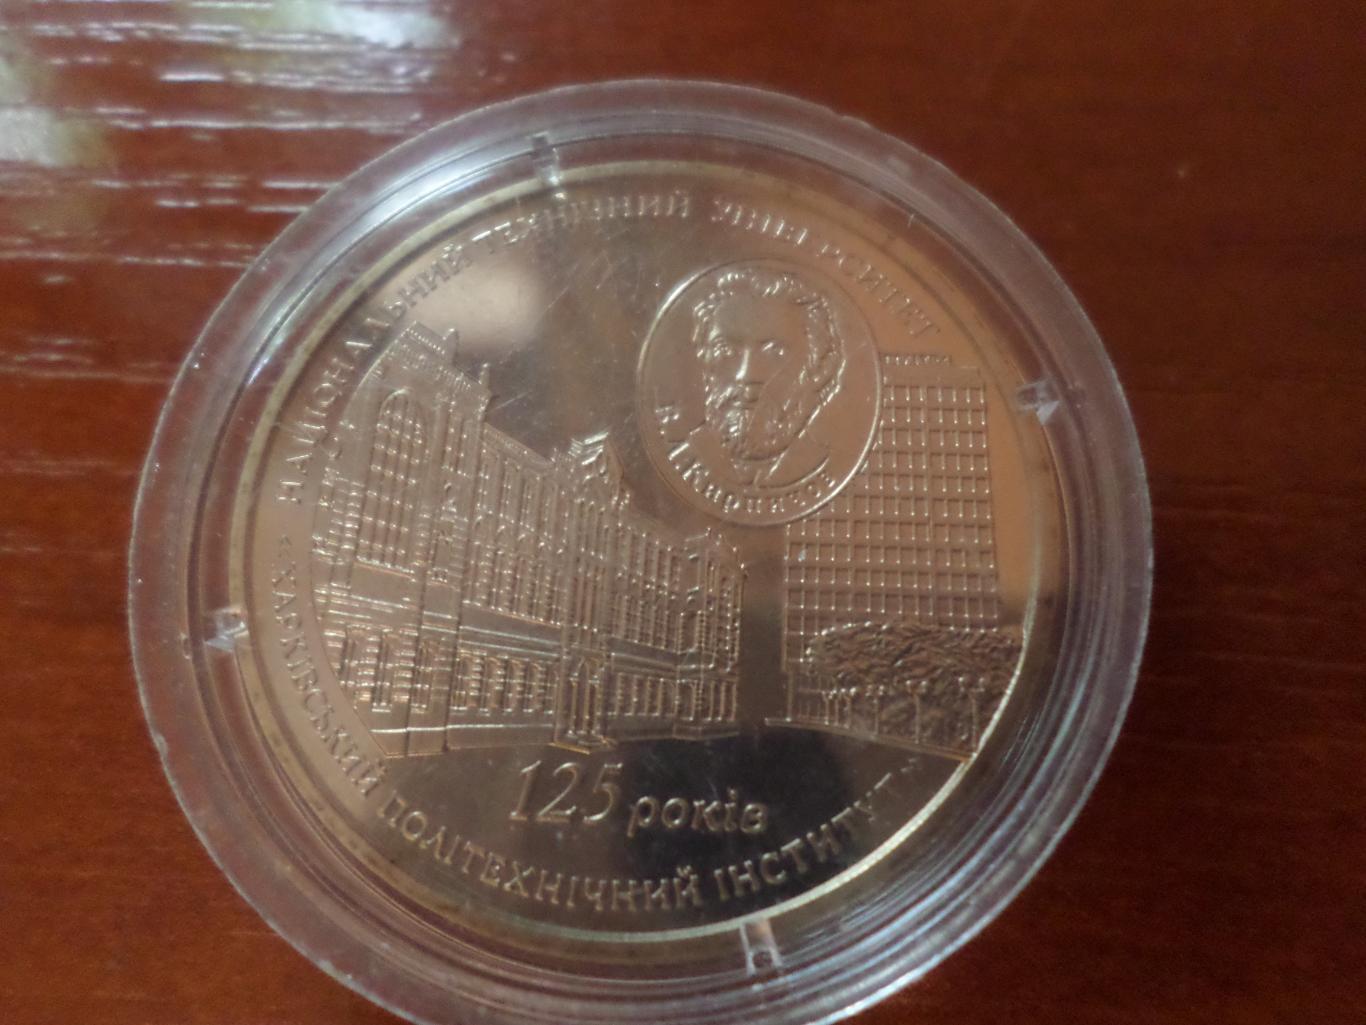 Монета 2 гривны Украина 125 лет ХПИ Харьковский политехнический институт 2010 г